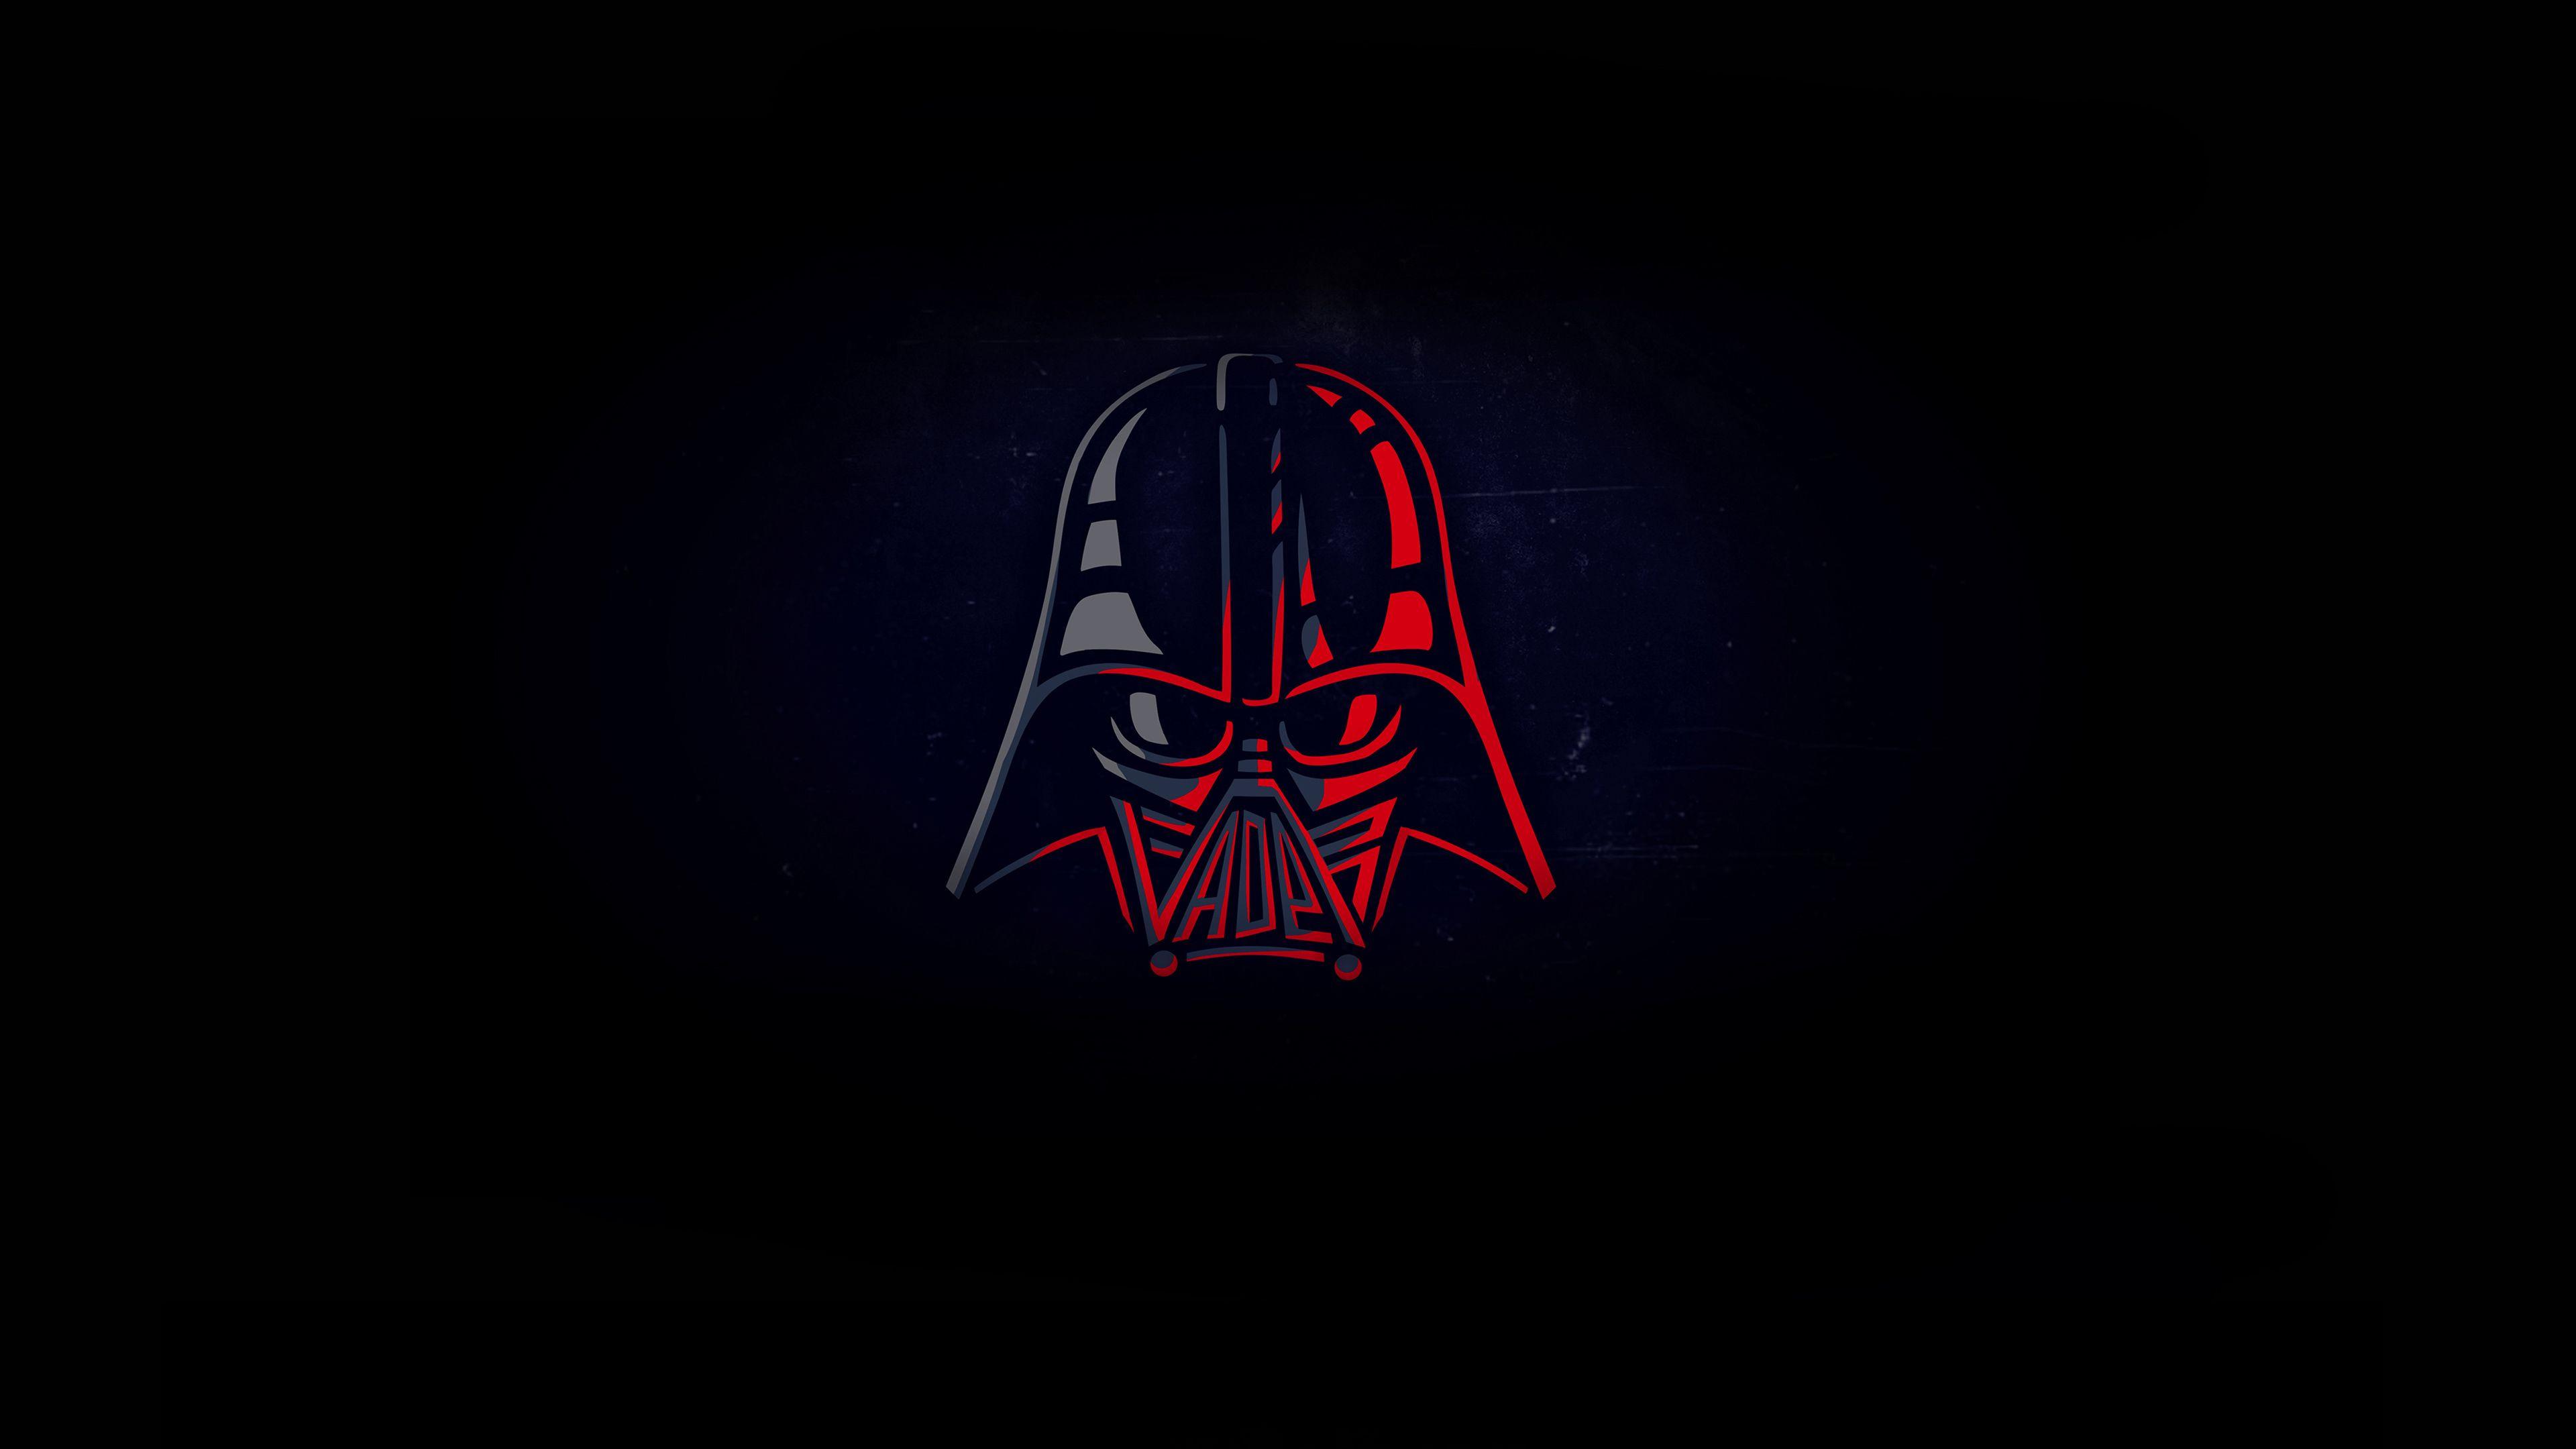 Darth Vader Minimal 4k star wars .com